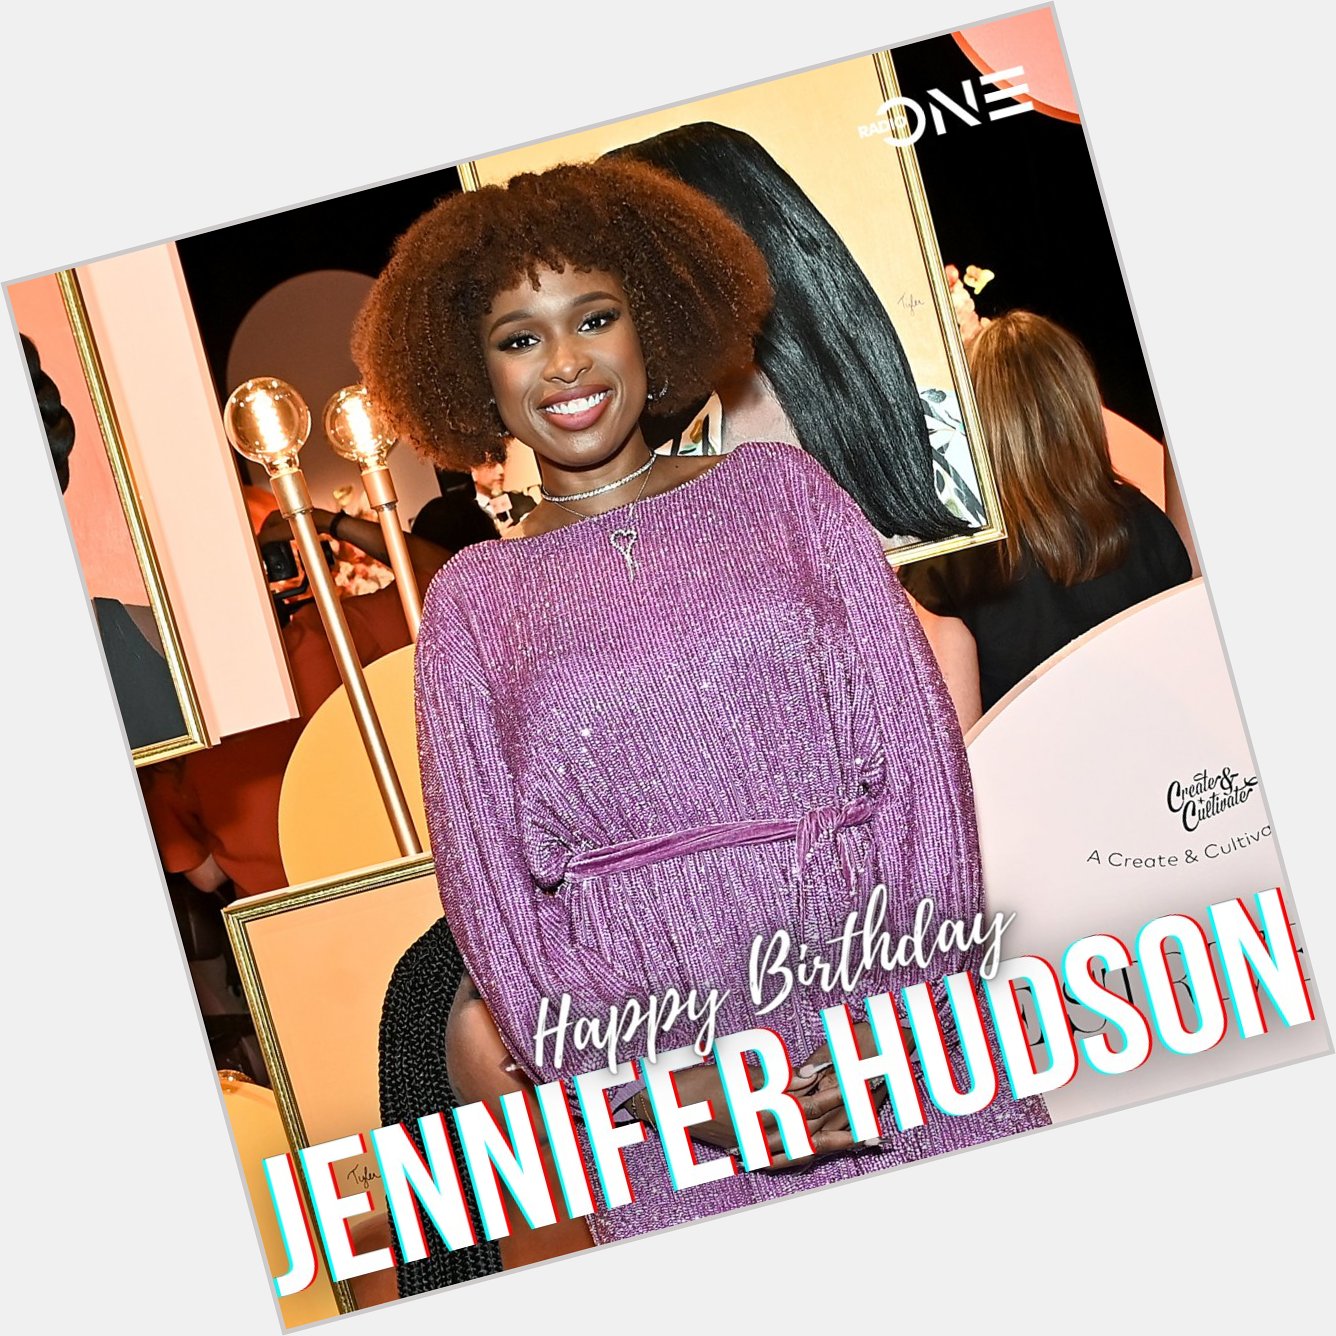 Wishing Jennifer Hudson a very Happy Birthday! 